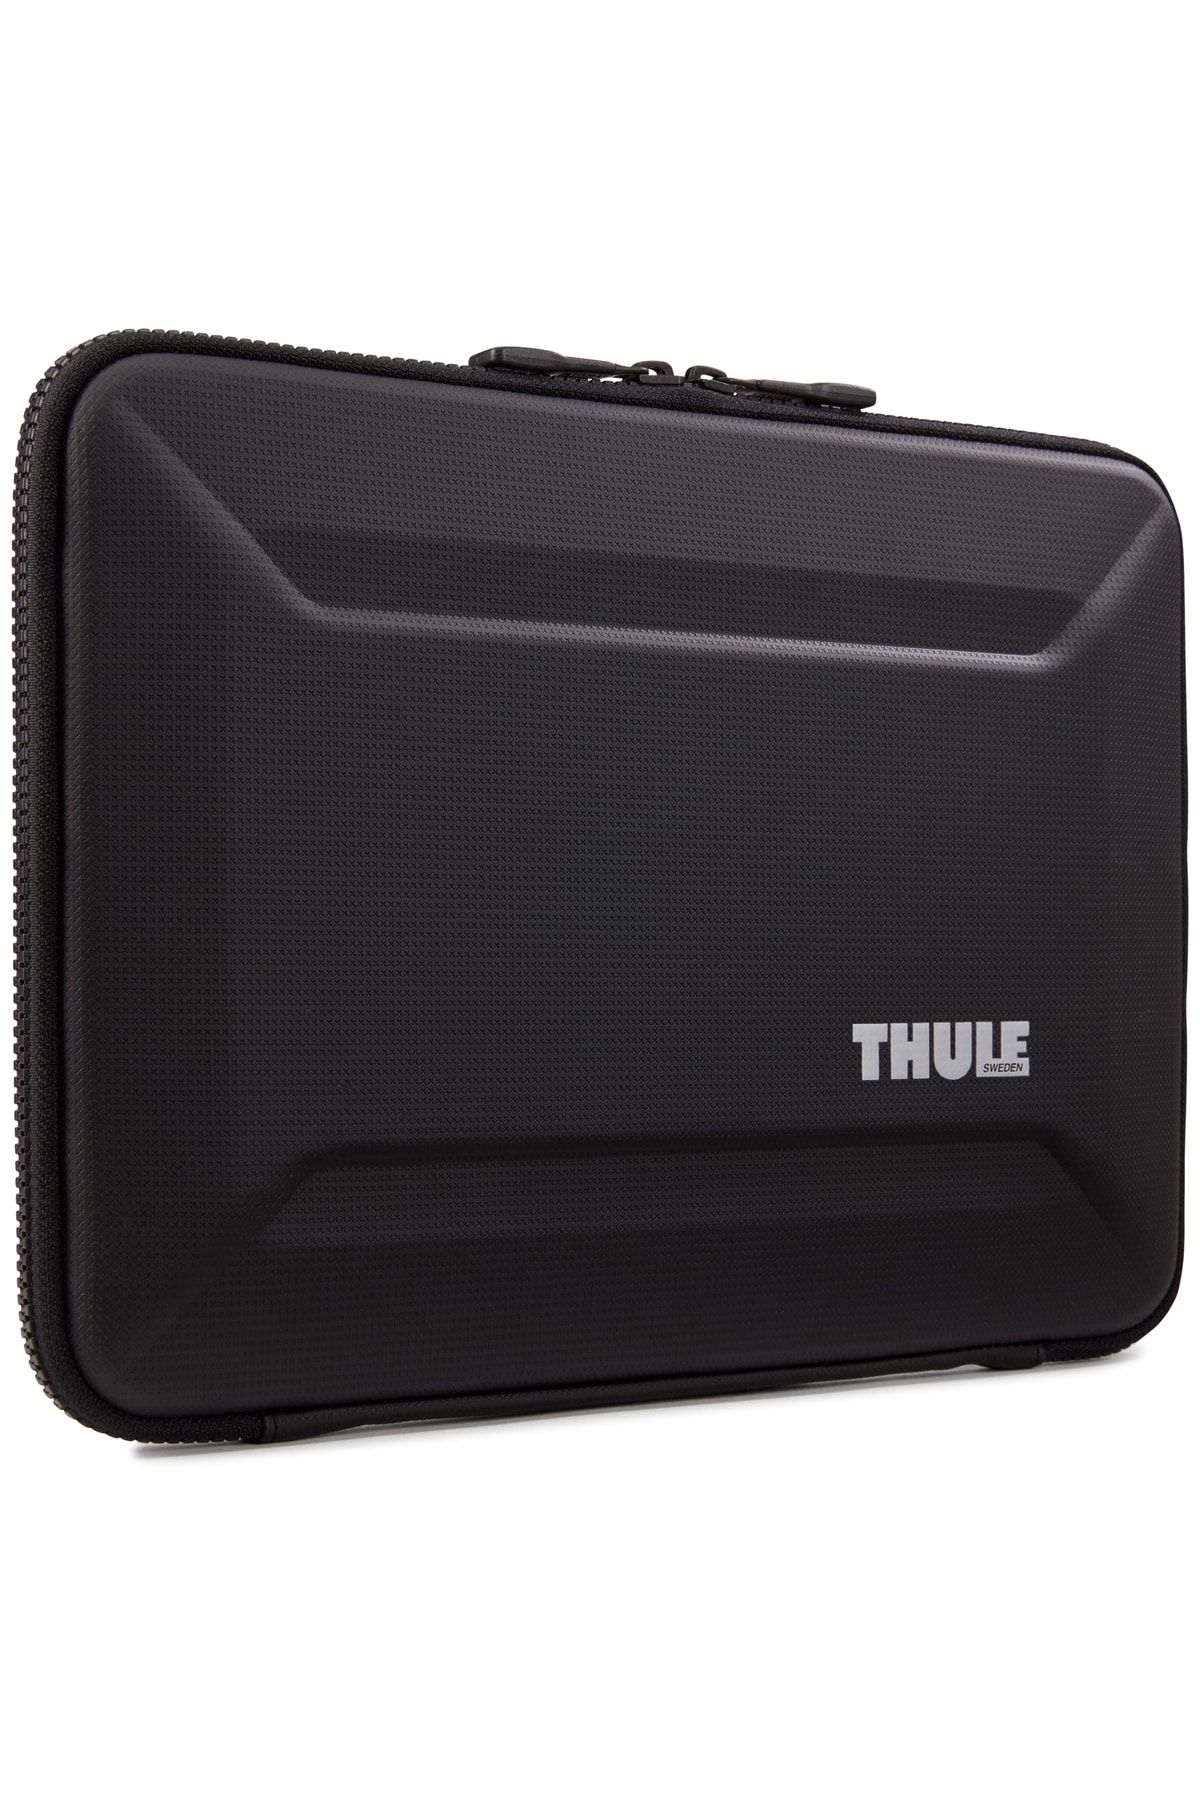 Thule Gauntlet 4 Macbook Sleeve 13"-14" - Black